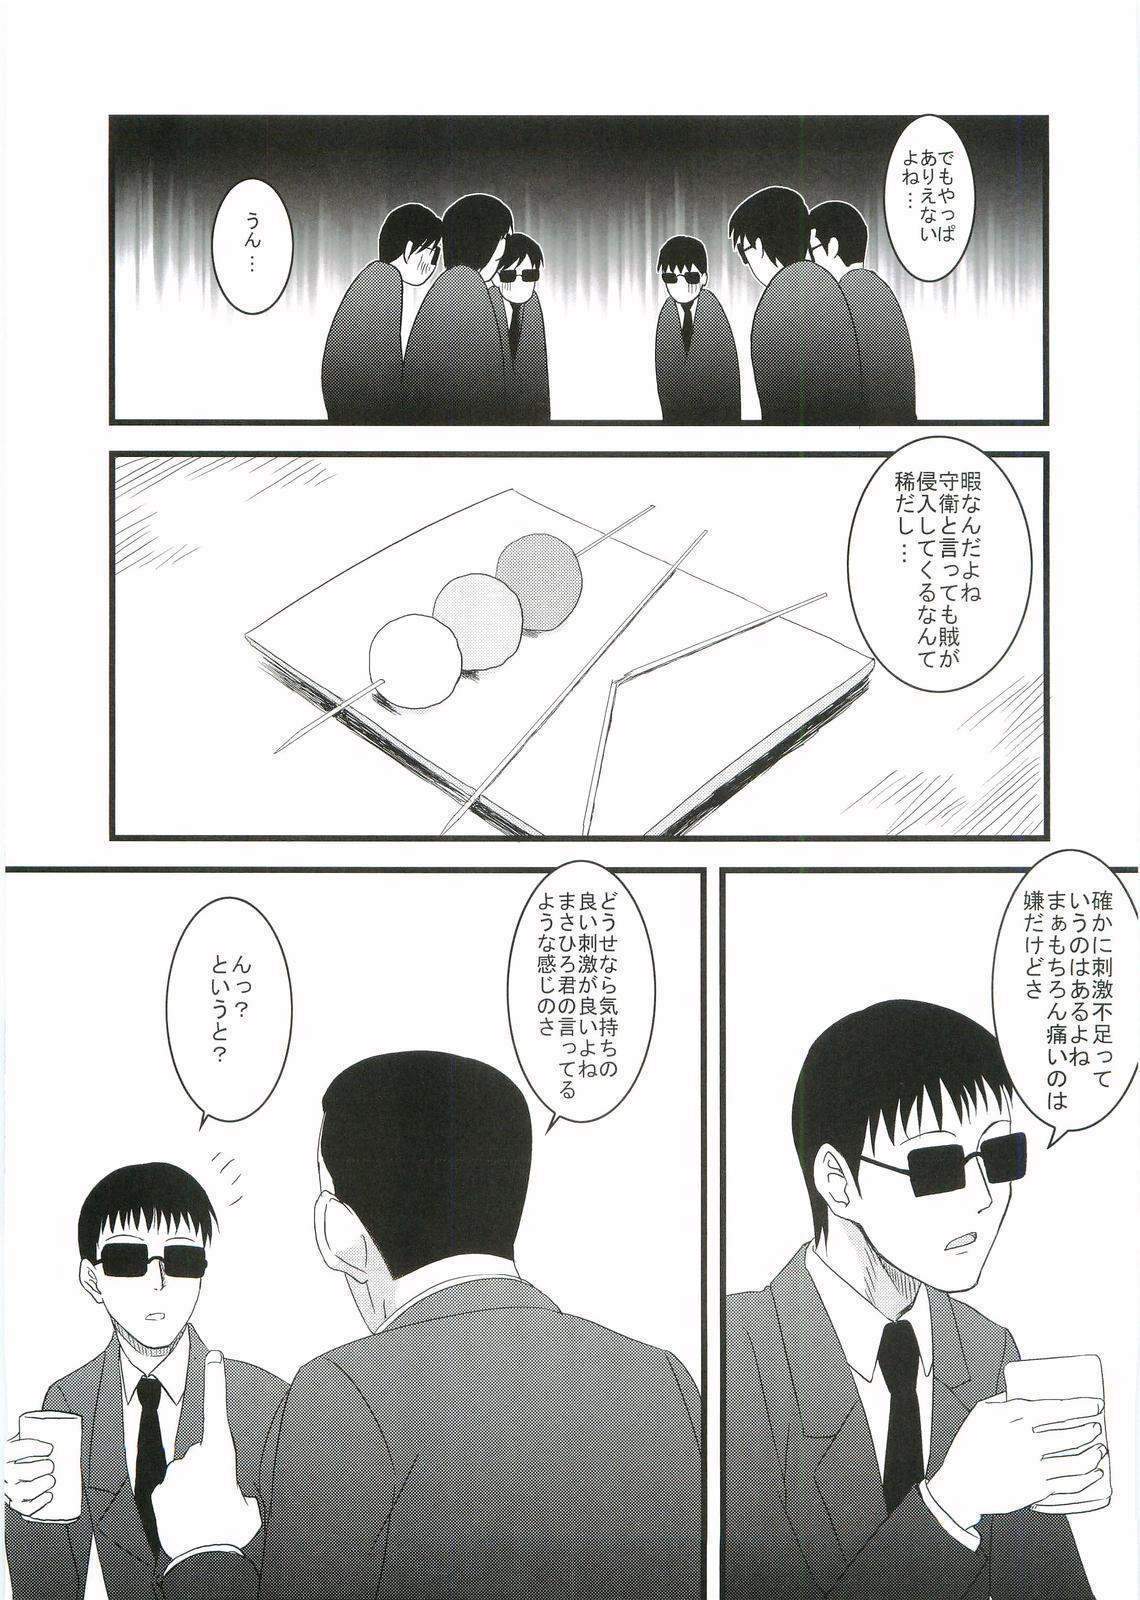 Les Kouhukuya no Ehon Gokujo 2 - Gokujou seitokai Foursome - Page 8